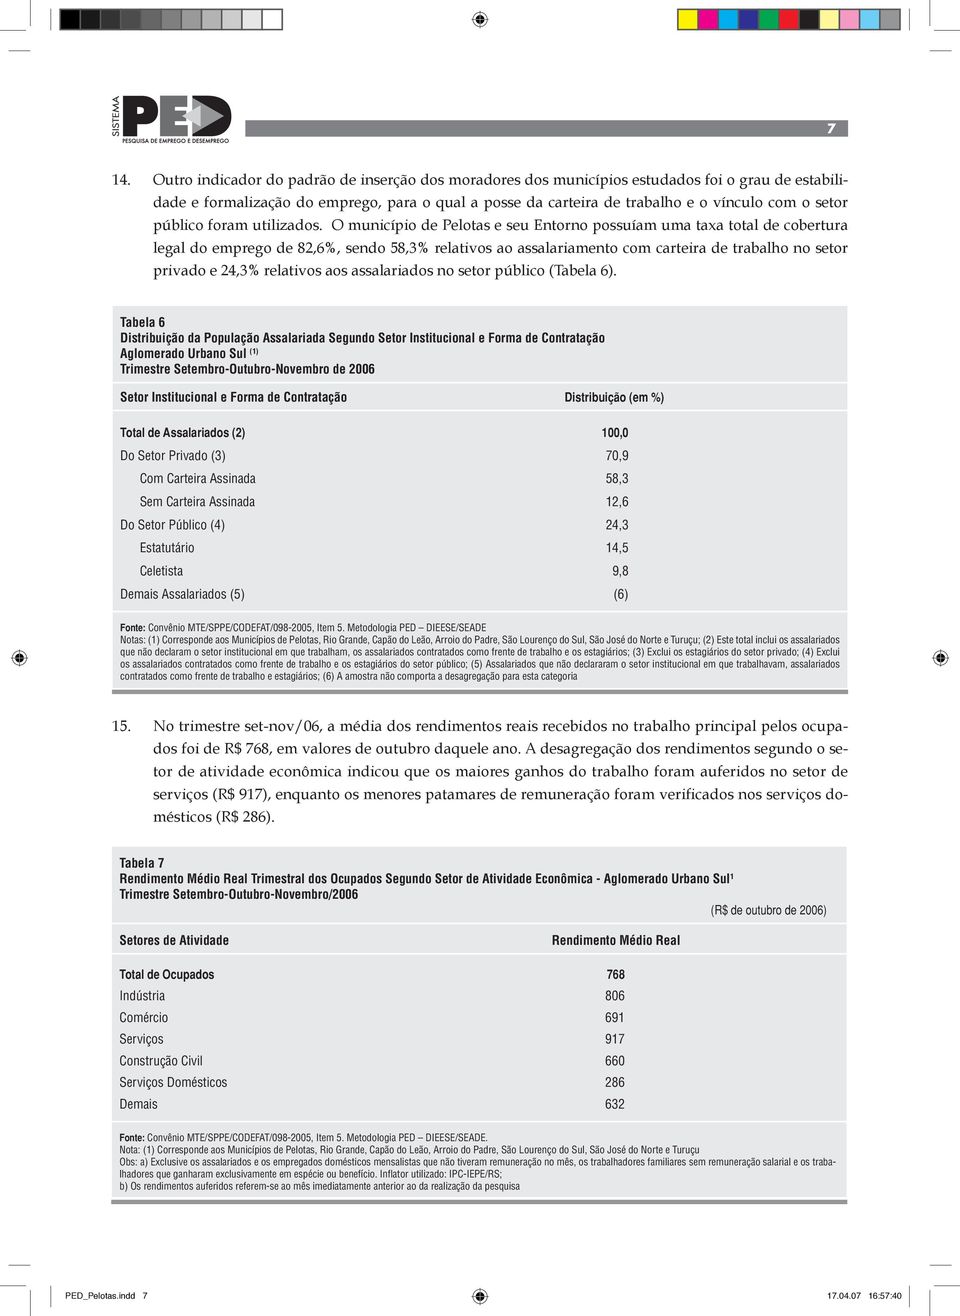 O município de Pelotas e seu Entorno possuíam uma taxa total de cobertura legal do emprego de 82,6%, sendo 58,3% relativos ao assalariamento com carteira de trabalho no setor privado e 24,3%